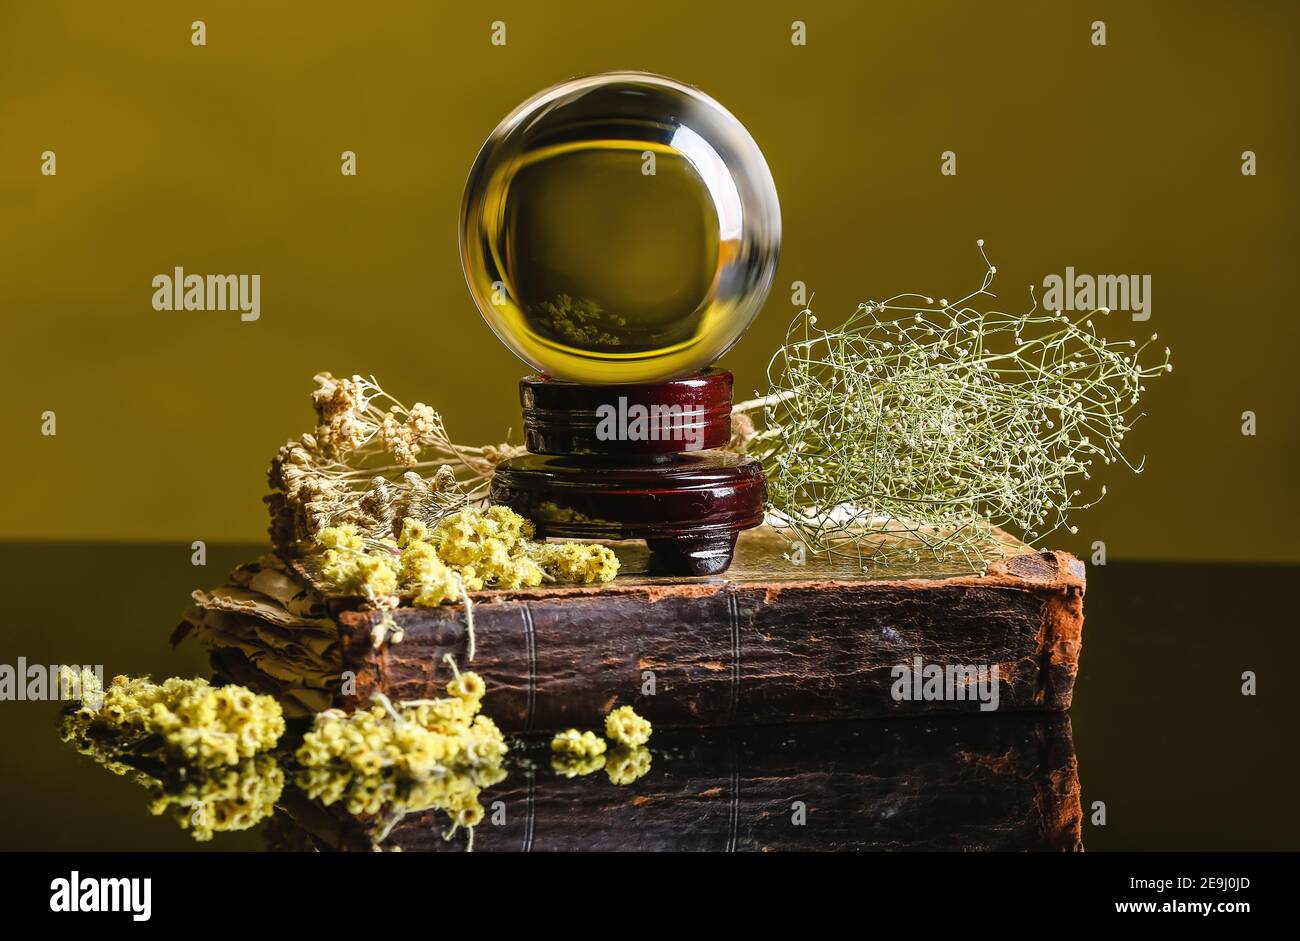 Palla di cristallo di cassiere di fortuna, libro ed erbe secche sul tavolo Foto Stock